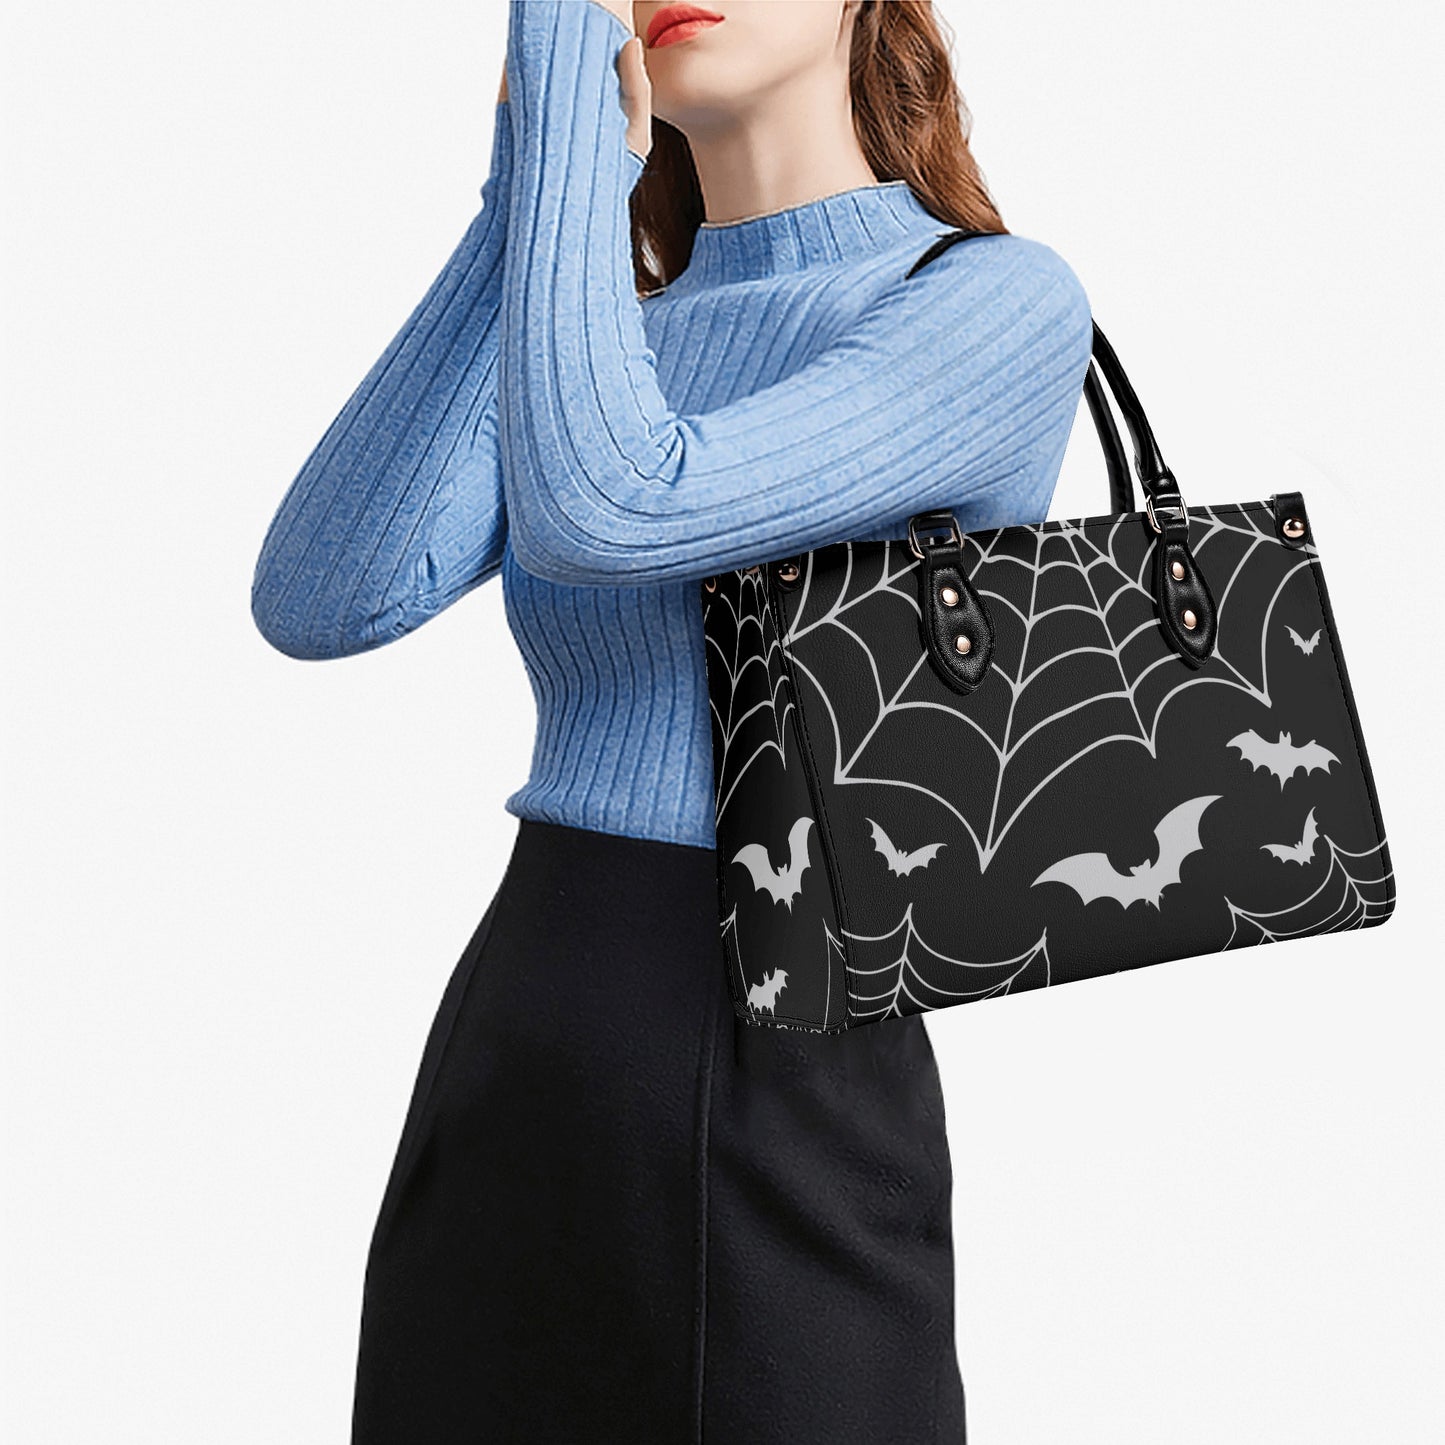 Bats & Spiderwebs Goth Luxury Women PU Leather Handbag